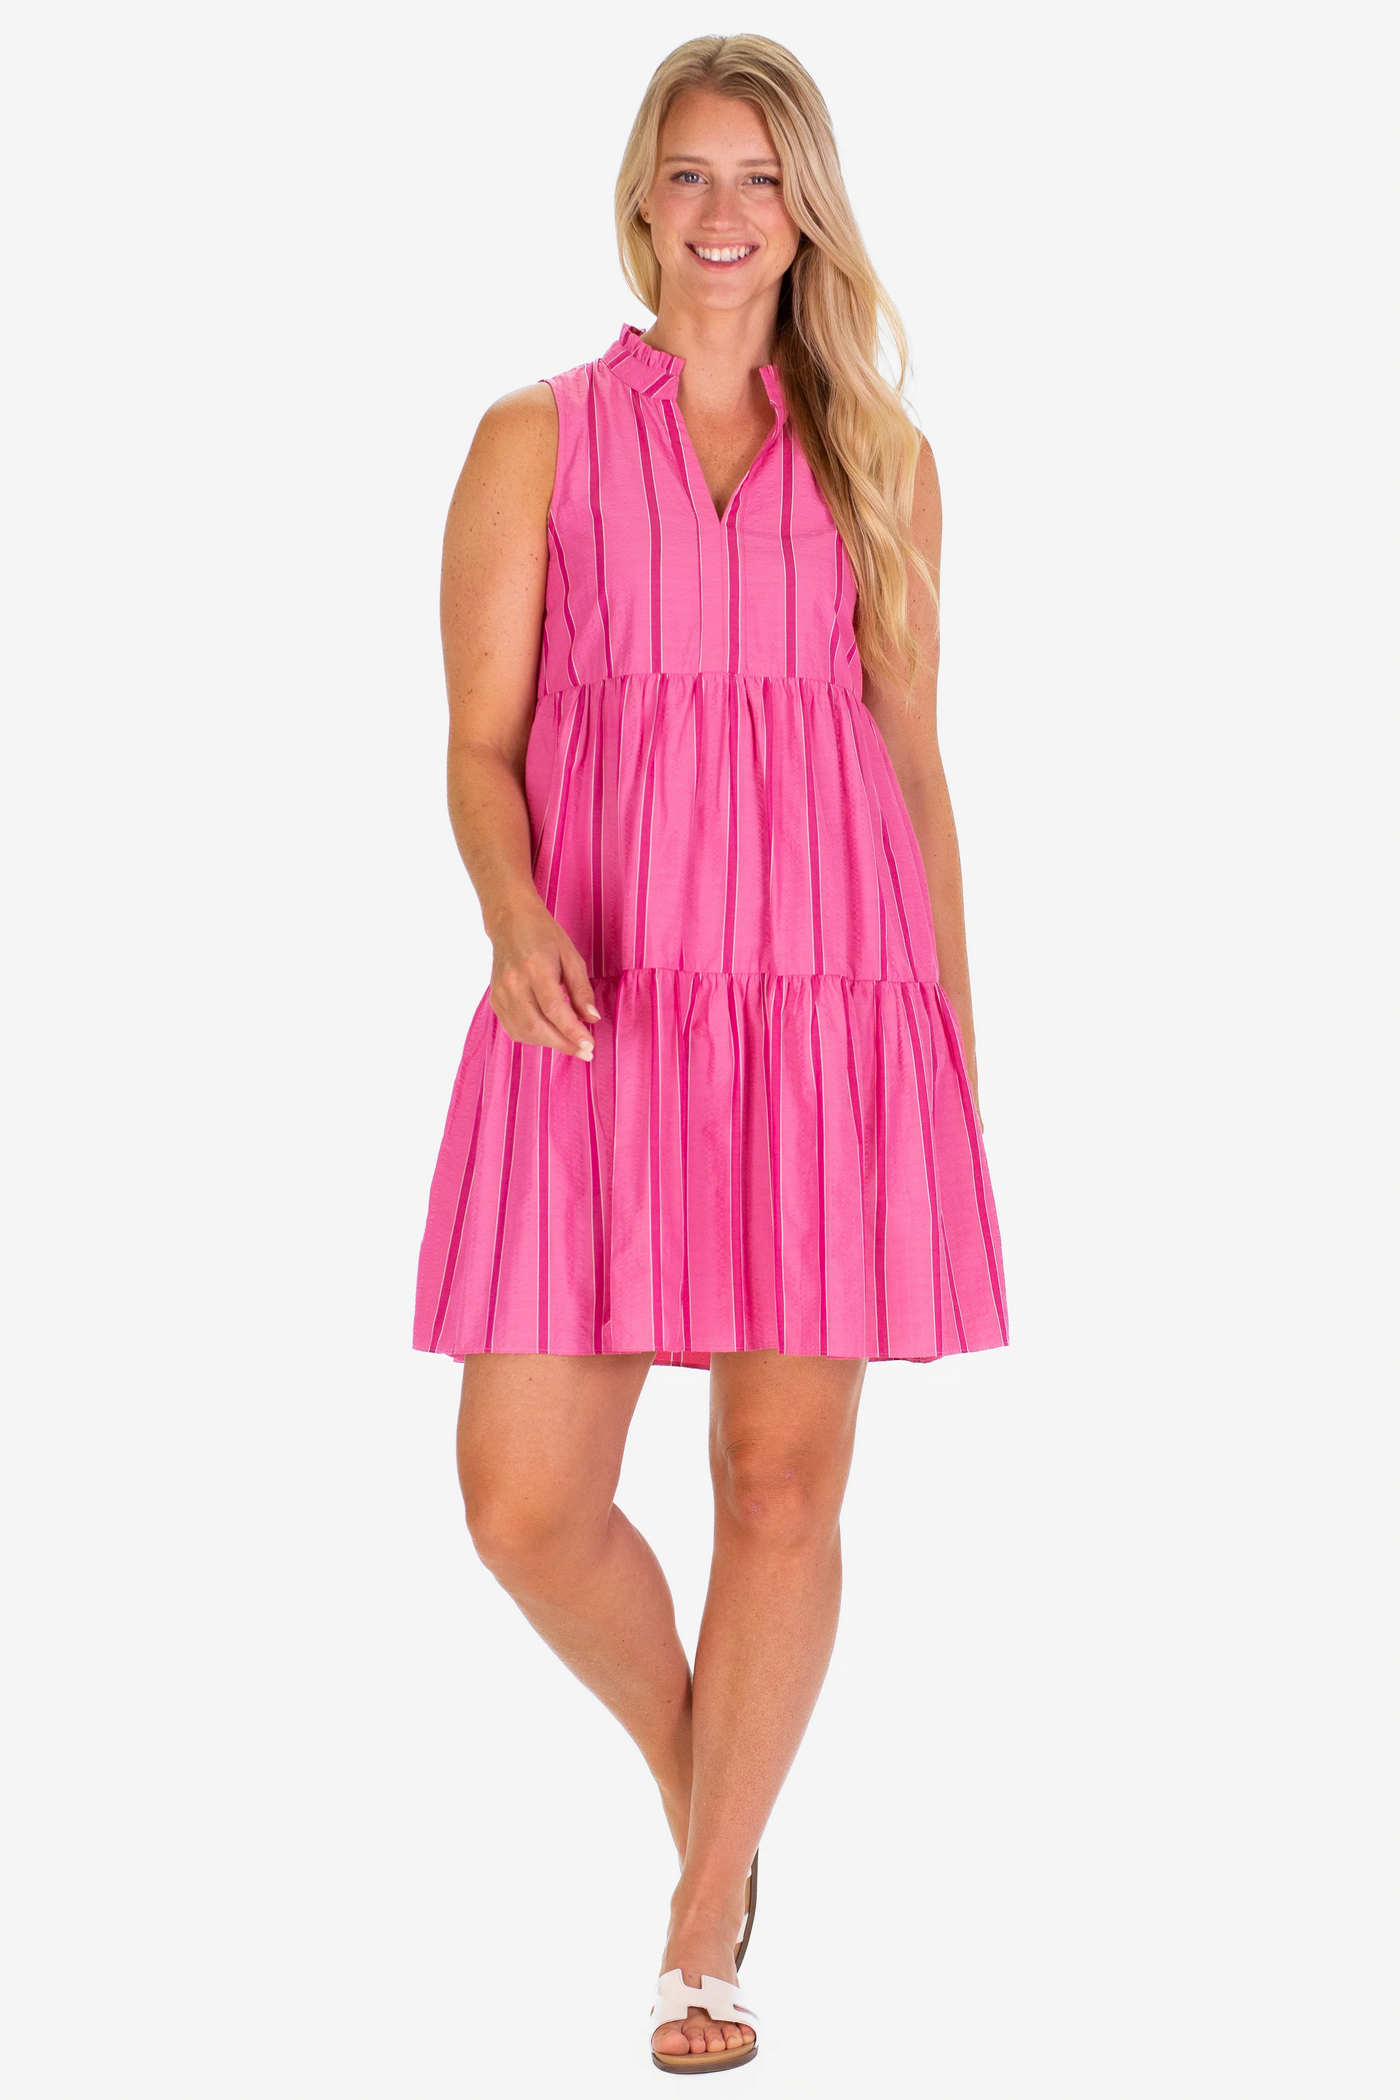 Annika Dress in Candy Pink Seersucker